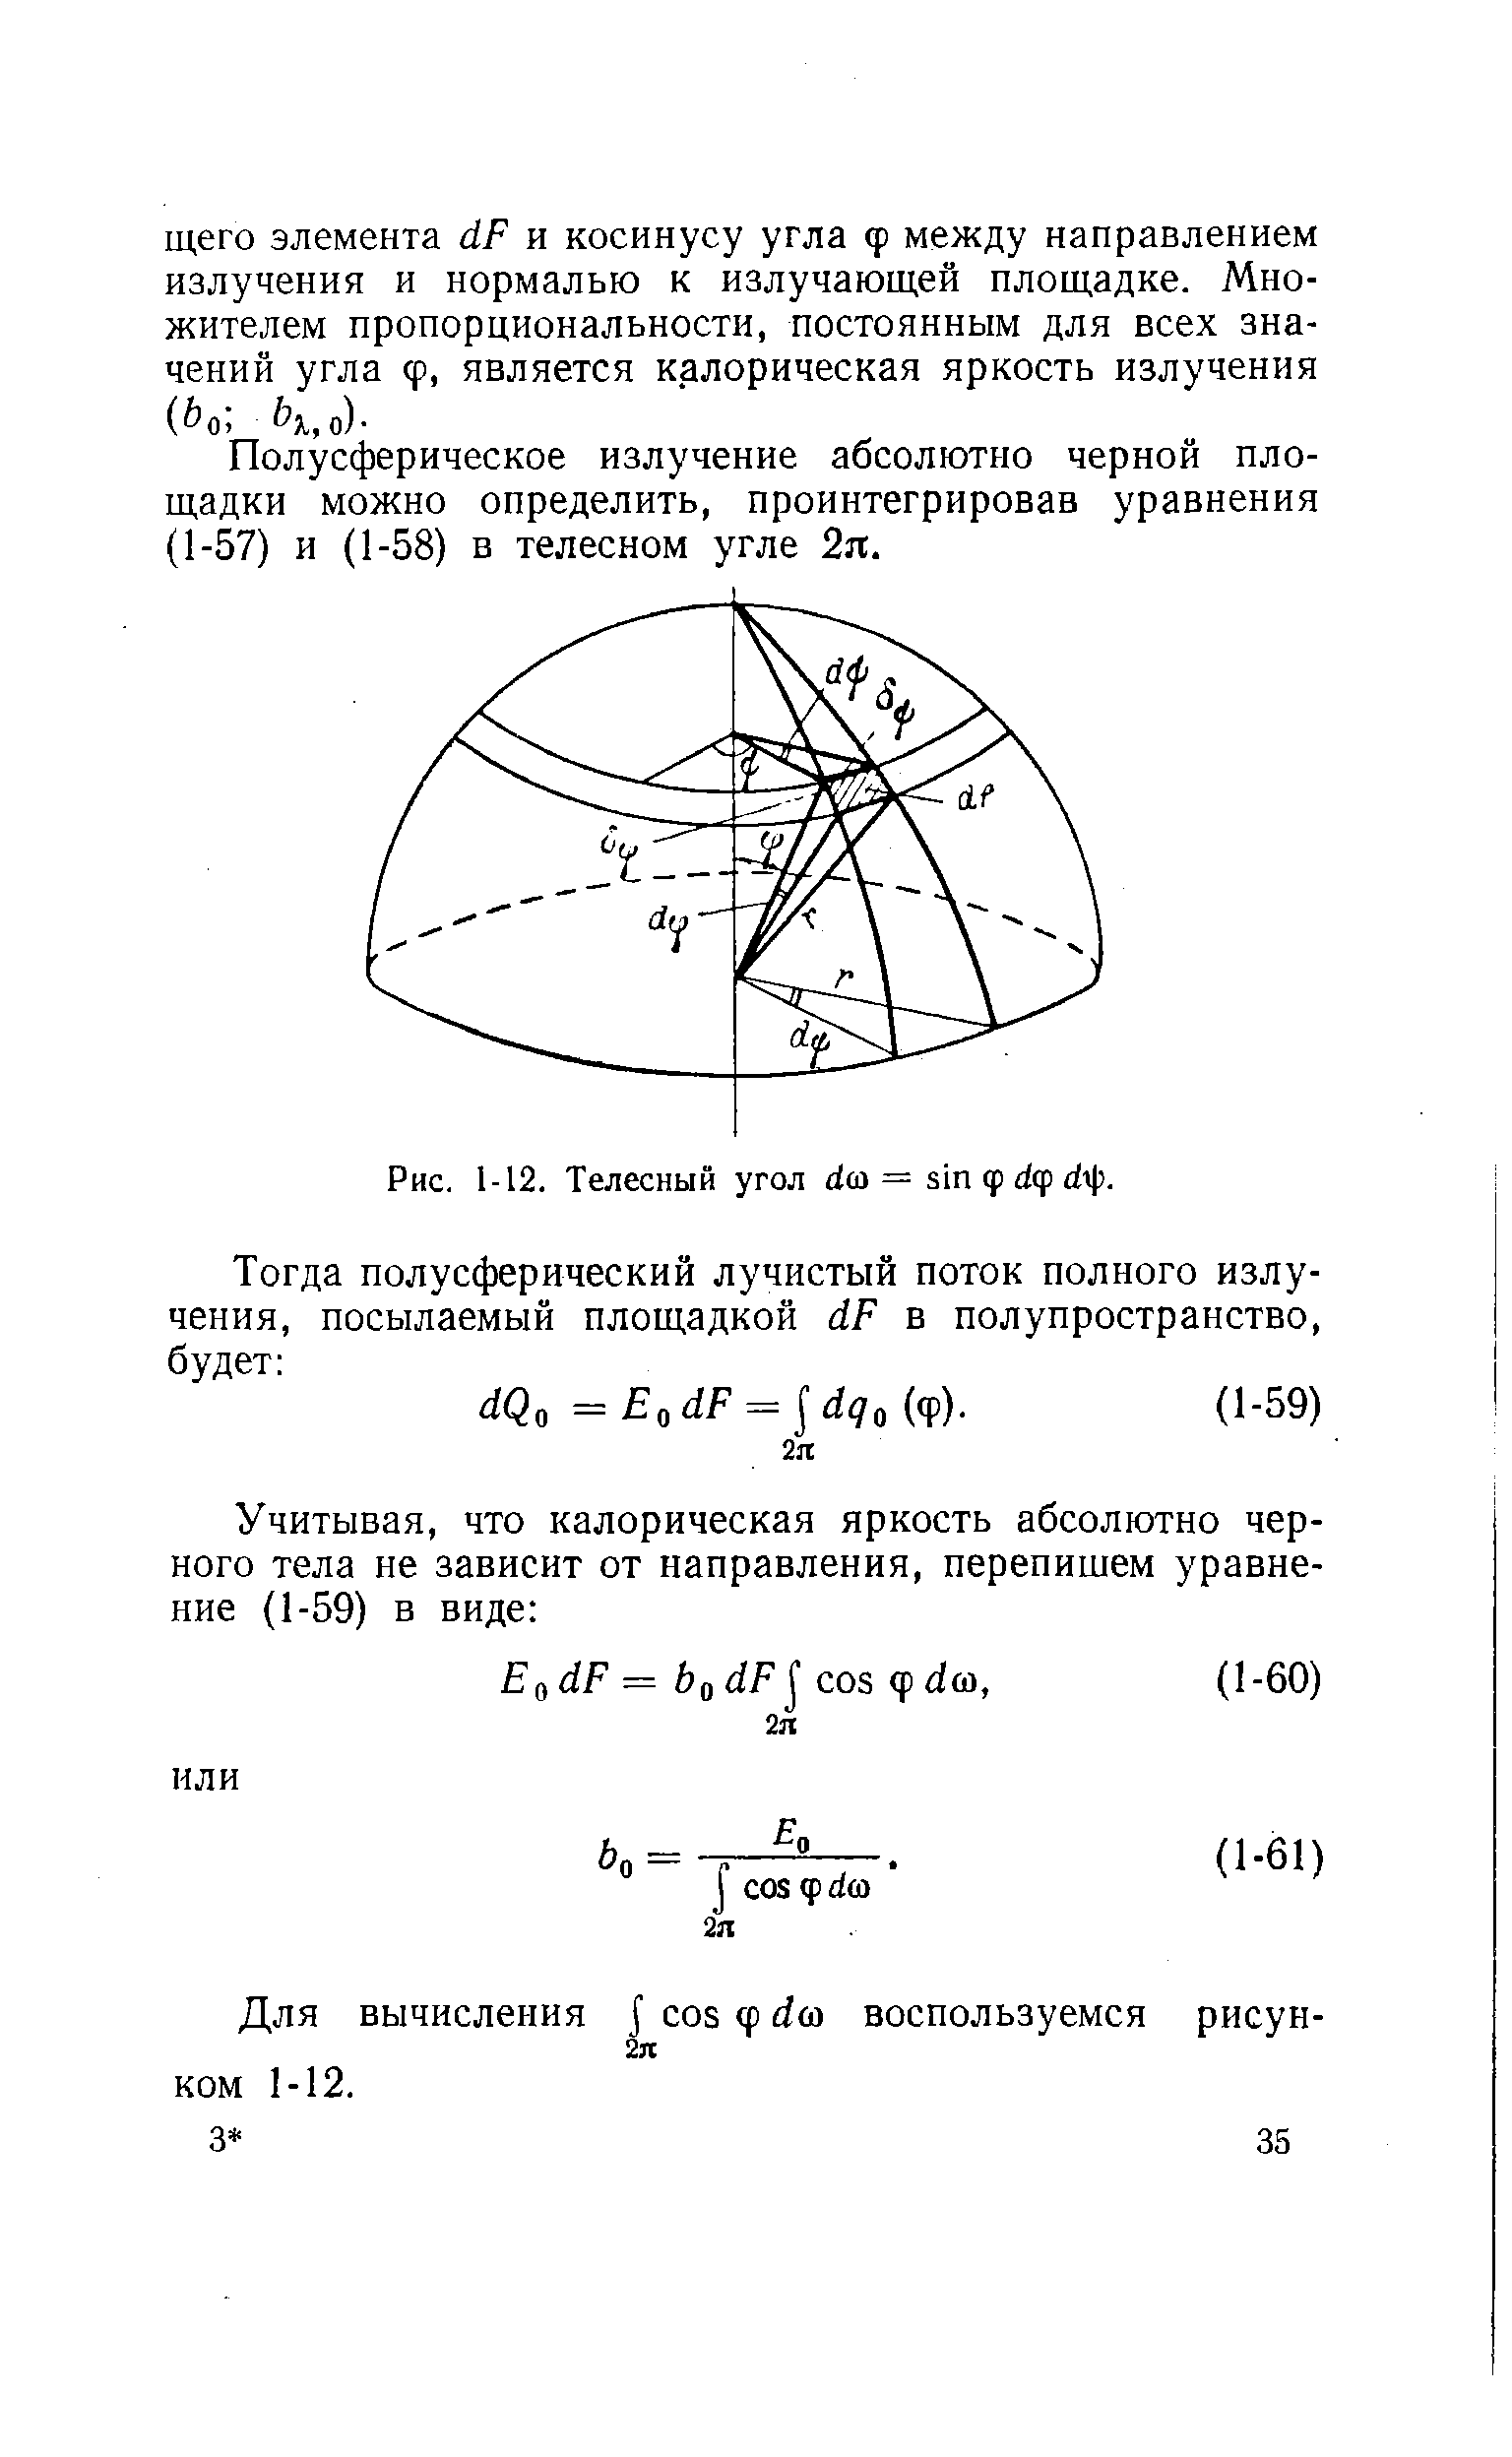 Полусферическое излучение абсолютно черной площадки можно определить, проинтегрировав уравнения (1-57) и (1-58) в телесном угле 2я.
